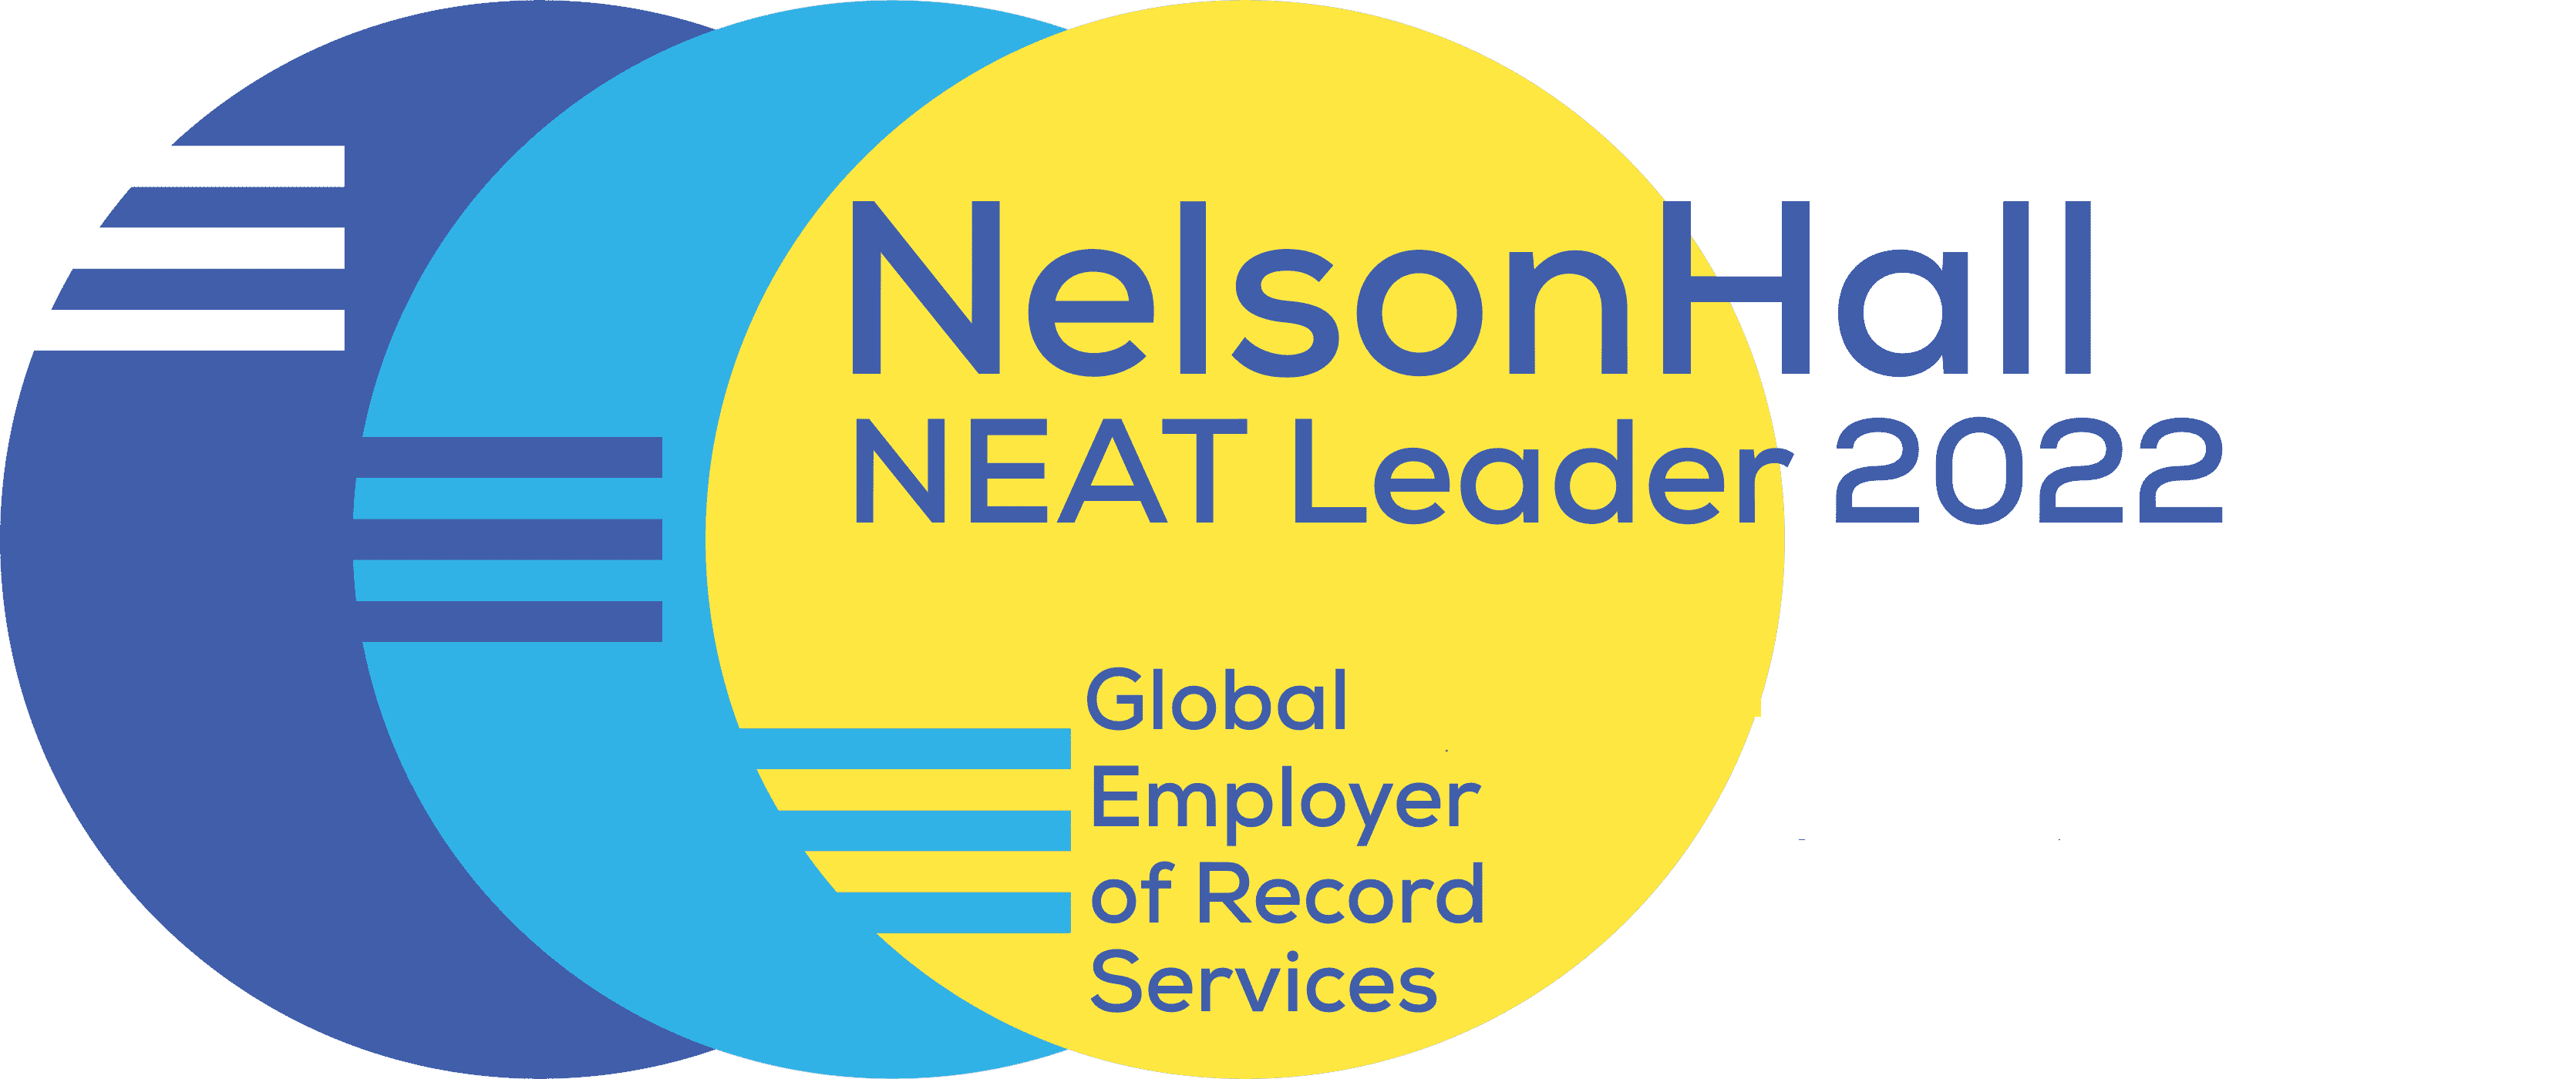 NelsonHall — transformacja dzięki zrozumieniu